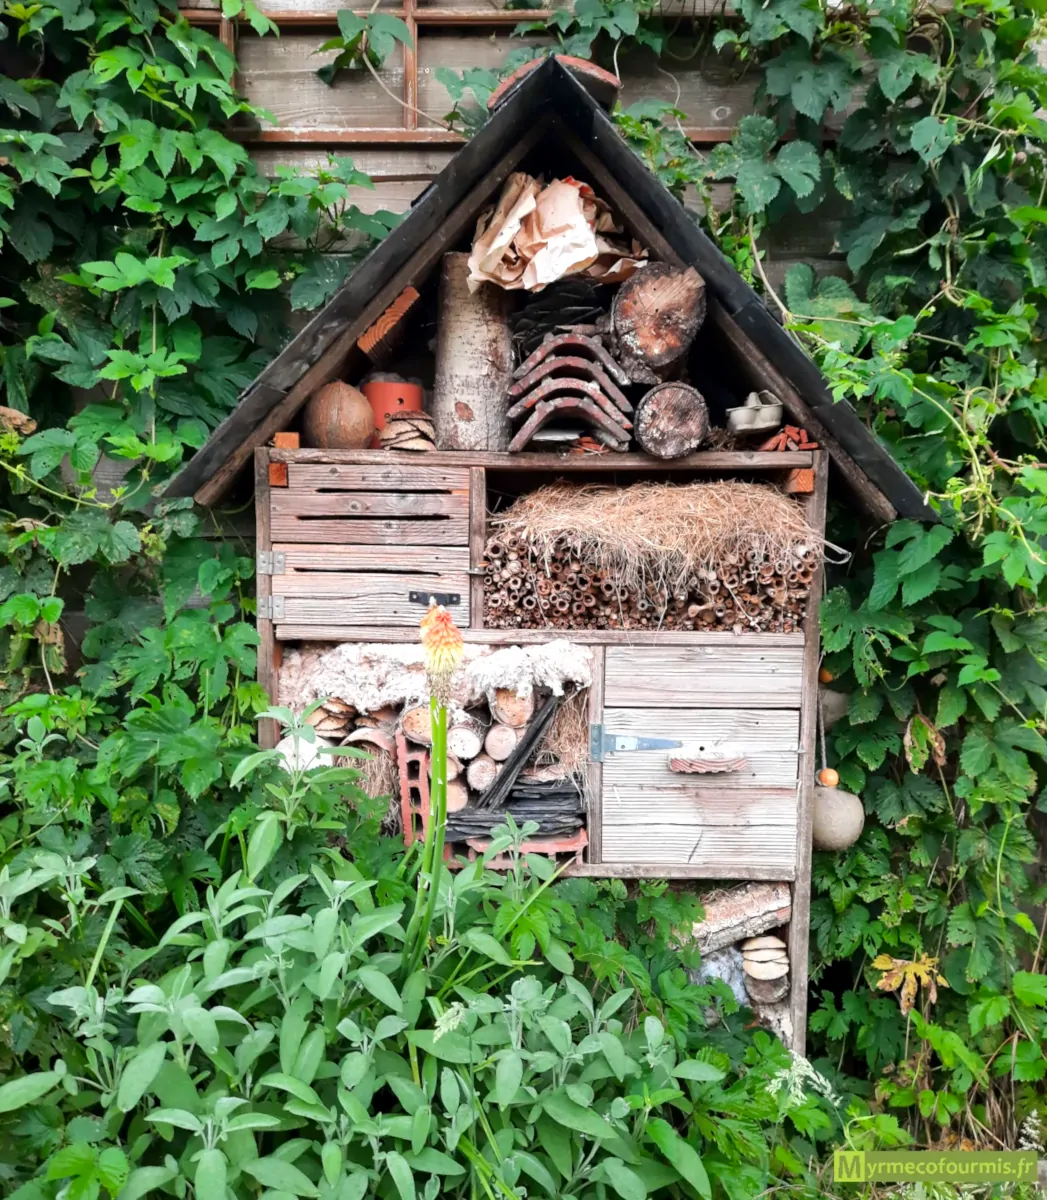 Un joli hôtel à insectes fait de boîtes en bois, de tuiles, de paille et de tiges creuses dans un jardin.